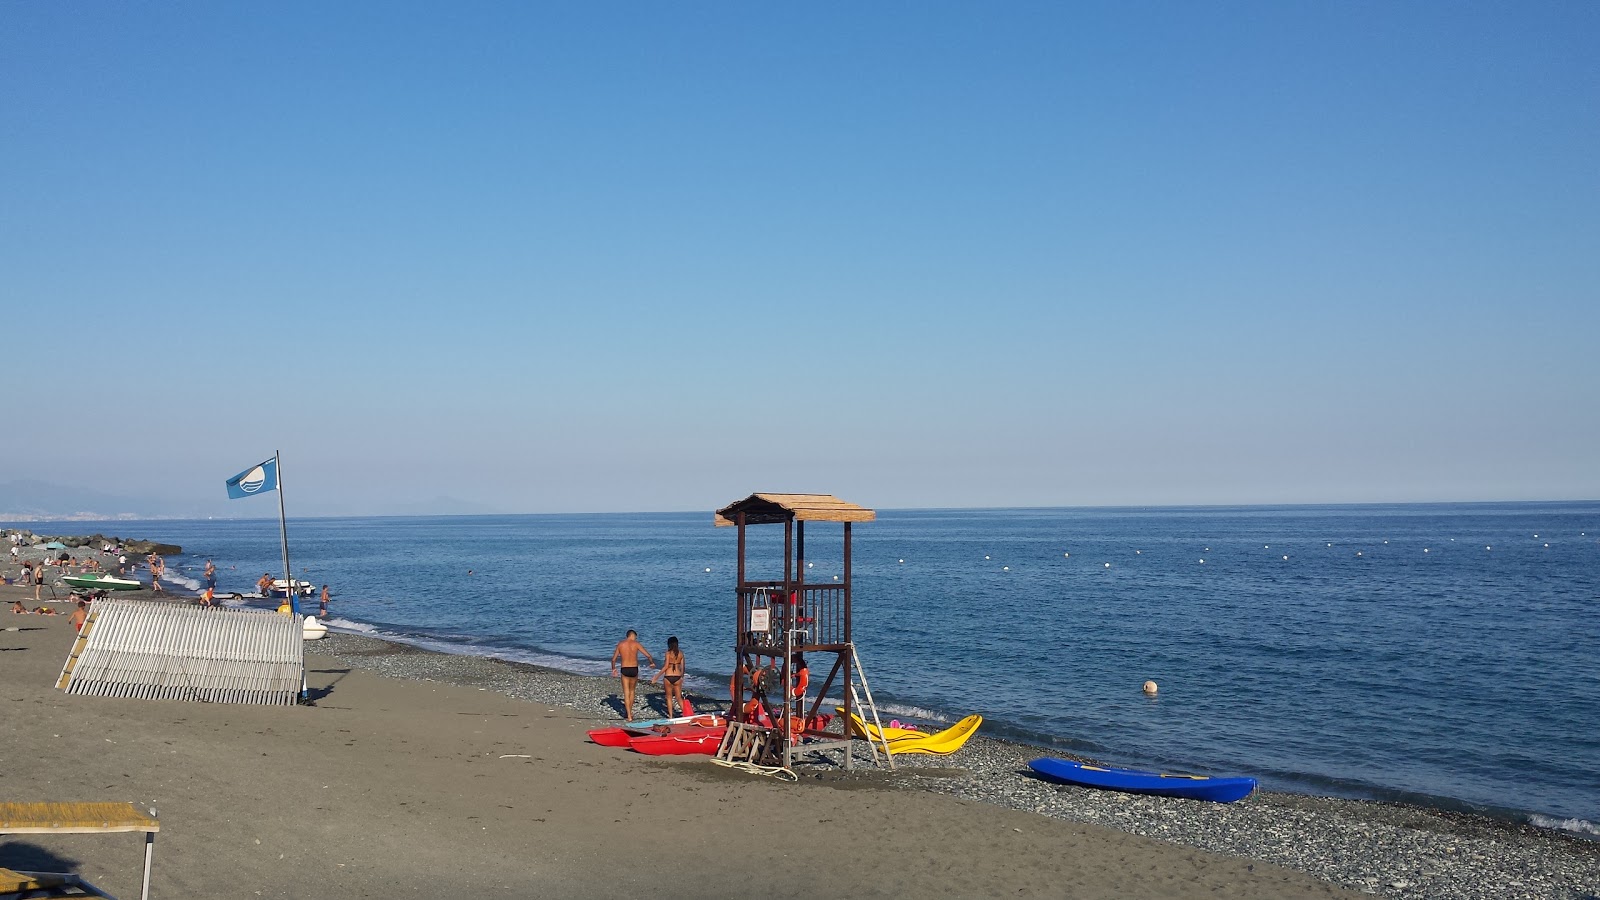 Foto von Spiaggia Lungomare - beliebter Ort unter Entspannungskennern